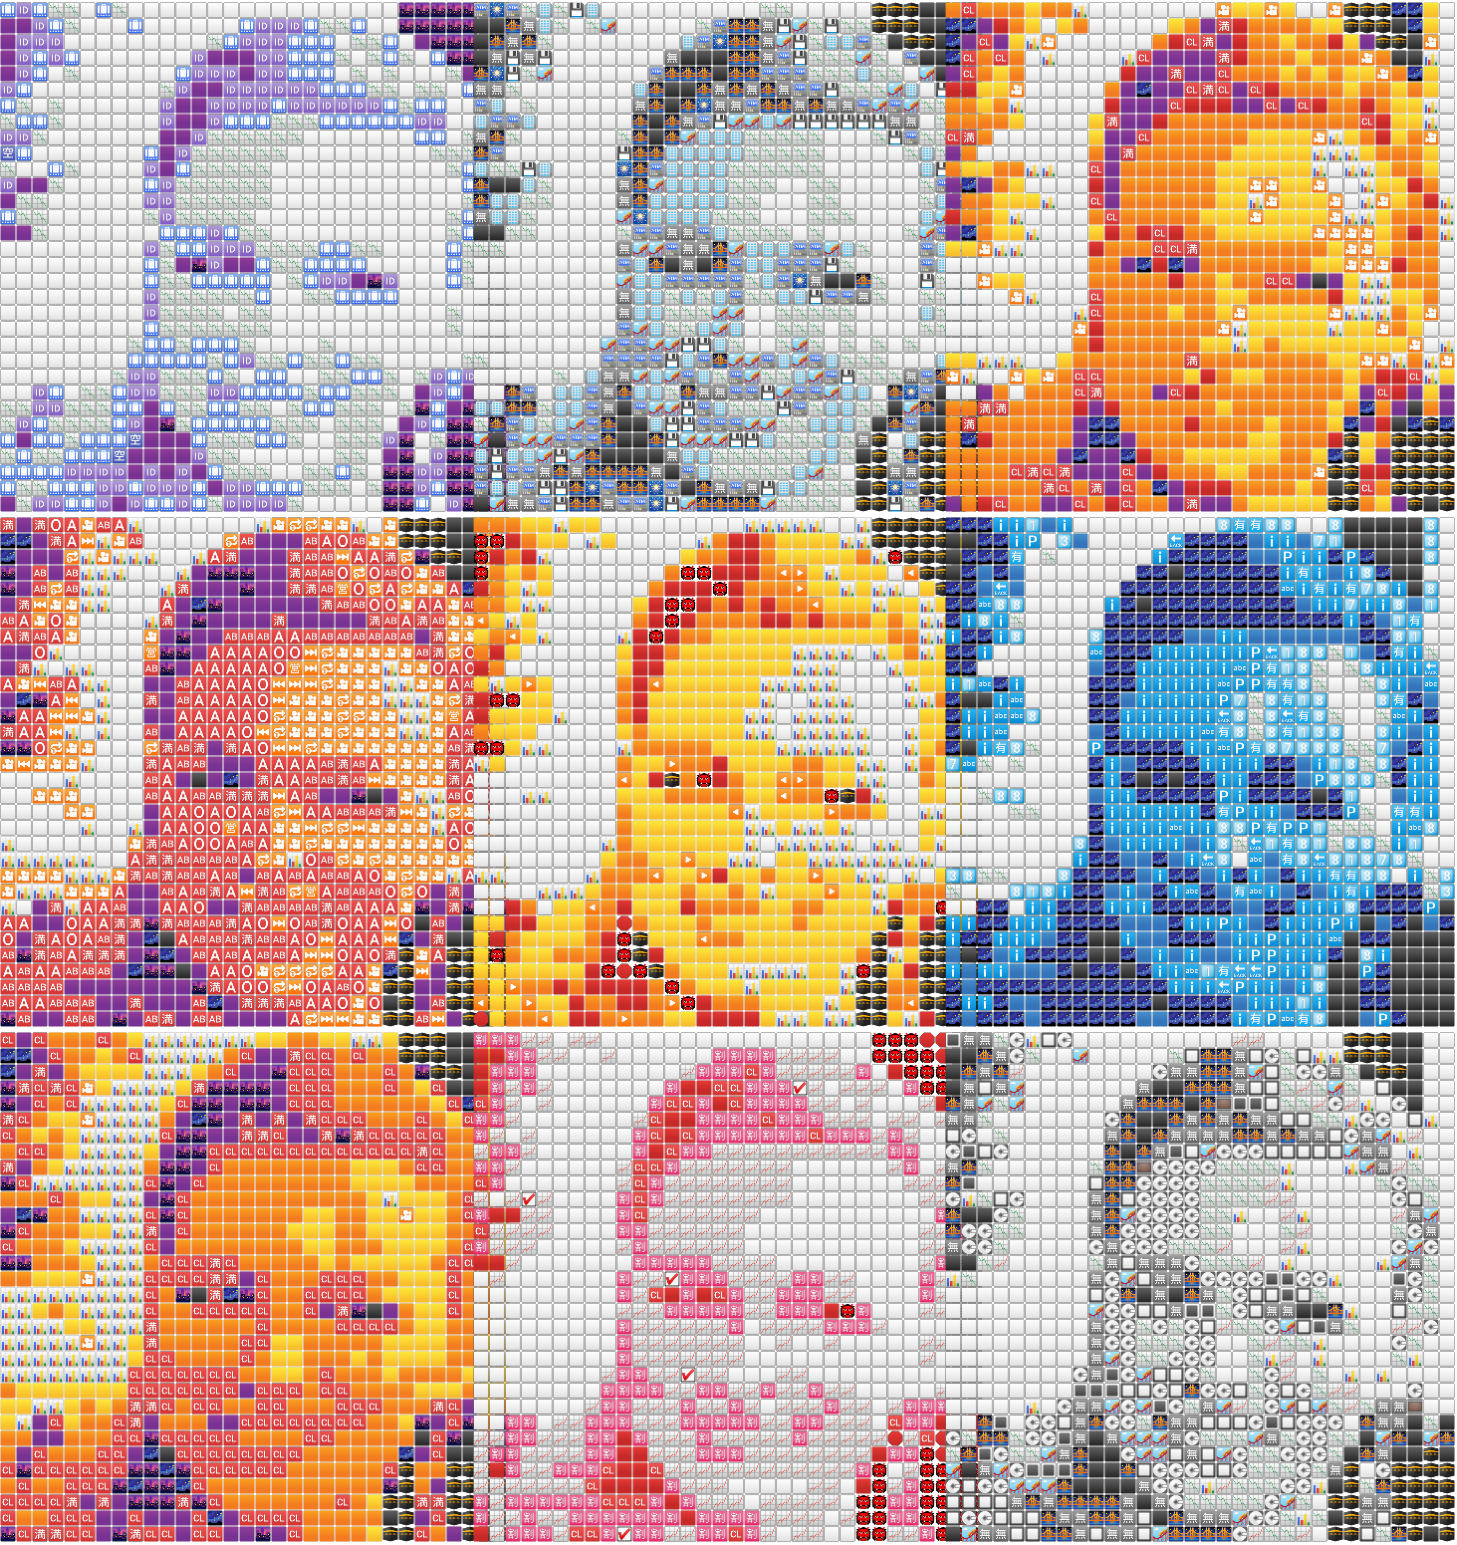 “Emoji Mosaic 3x3_grid”